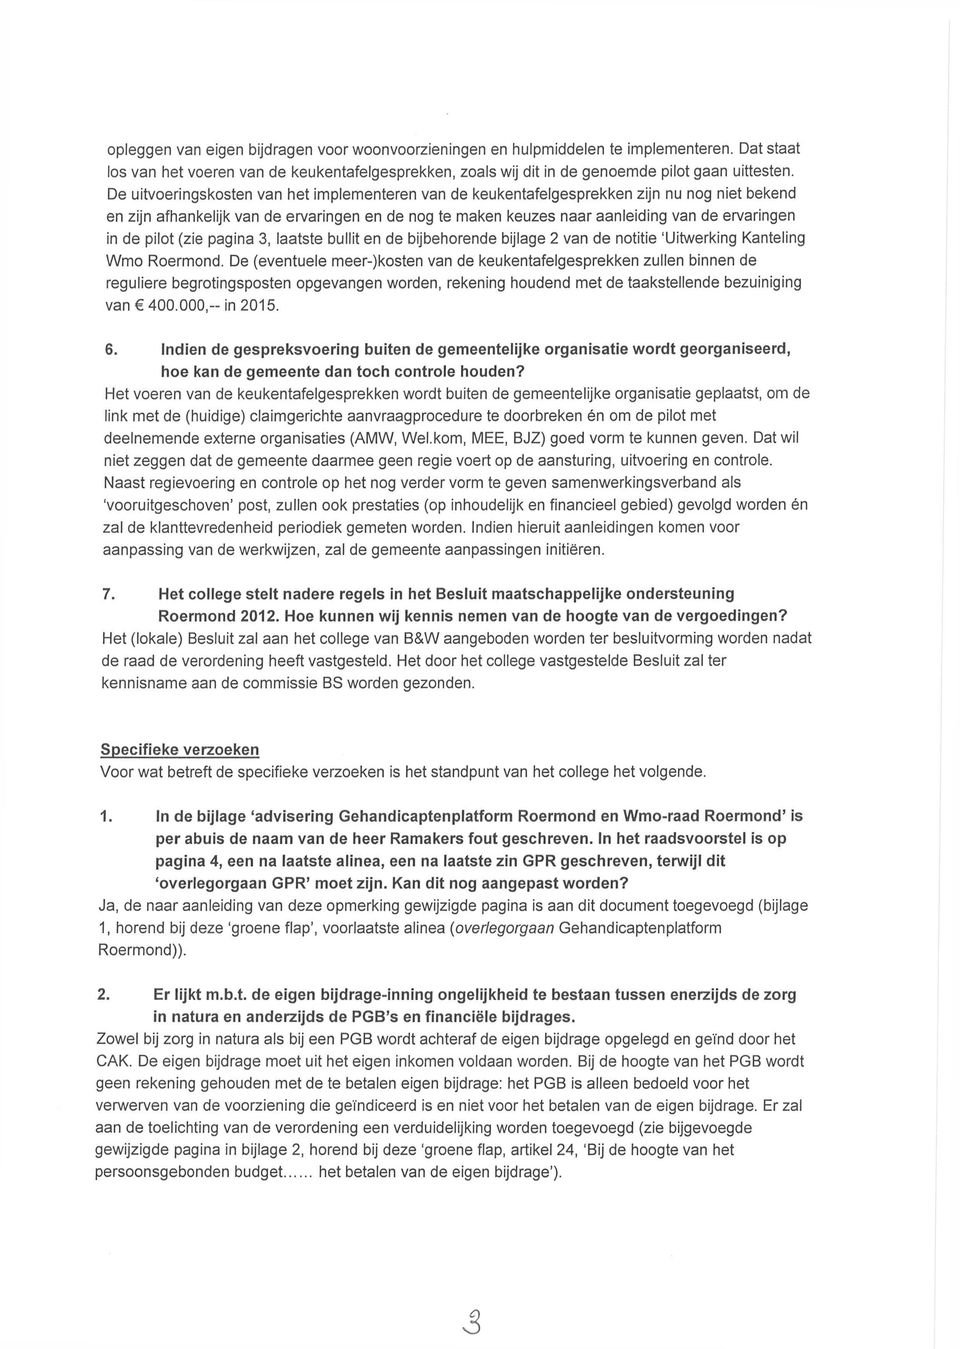 pilot (zie pagina 3, laatste bullit en de bijbehorende bijlage 2 van de notitie 'Uitwerking Kanteling Wmo Roermond.